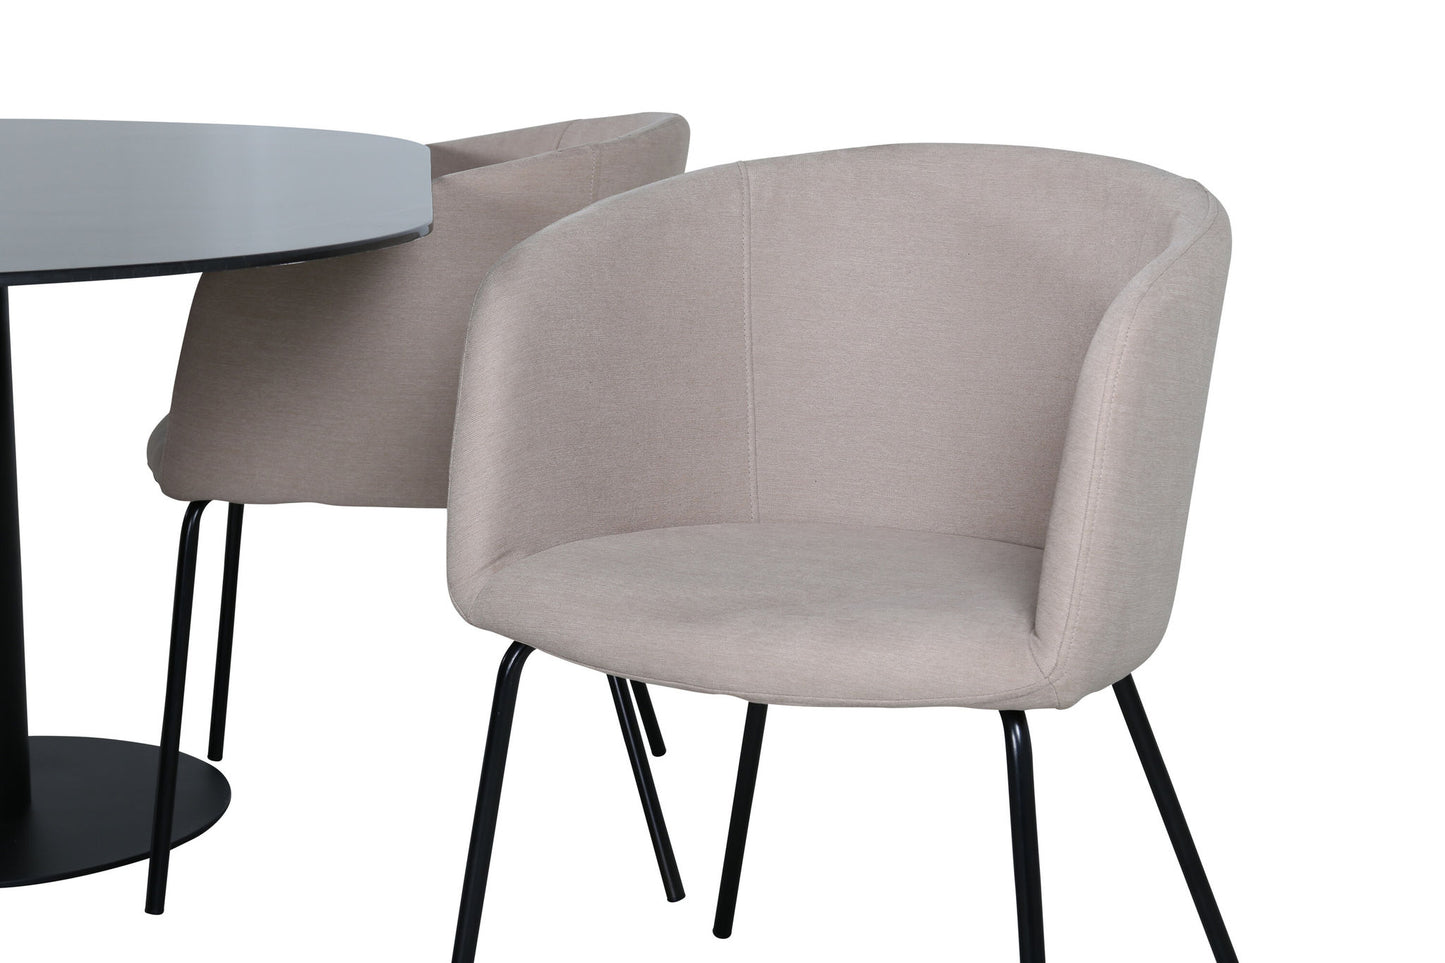 Pillan - Ovalt spisebord, Sort glas Marmor+Berit Stol, Sort Beige Stof (Polyester lined)